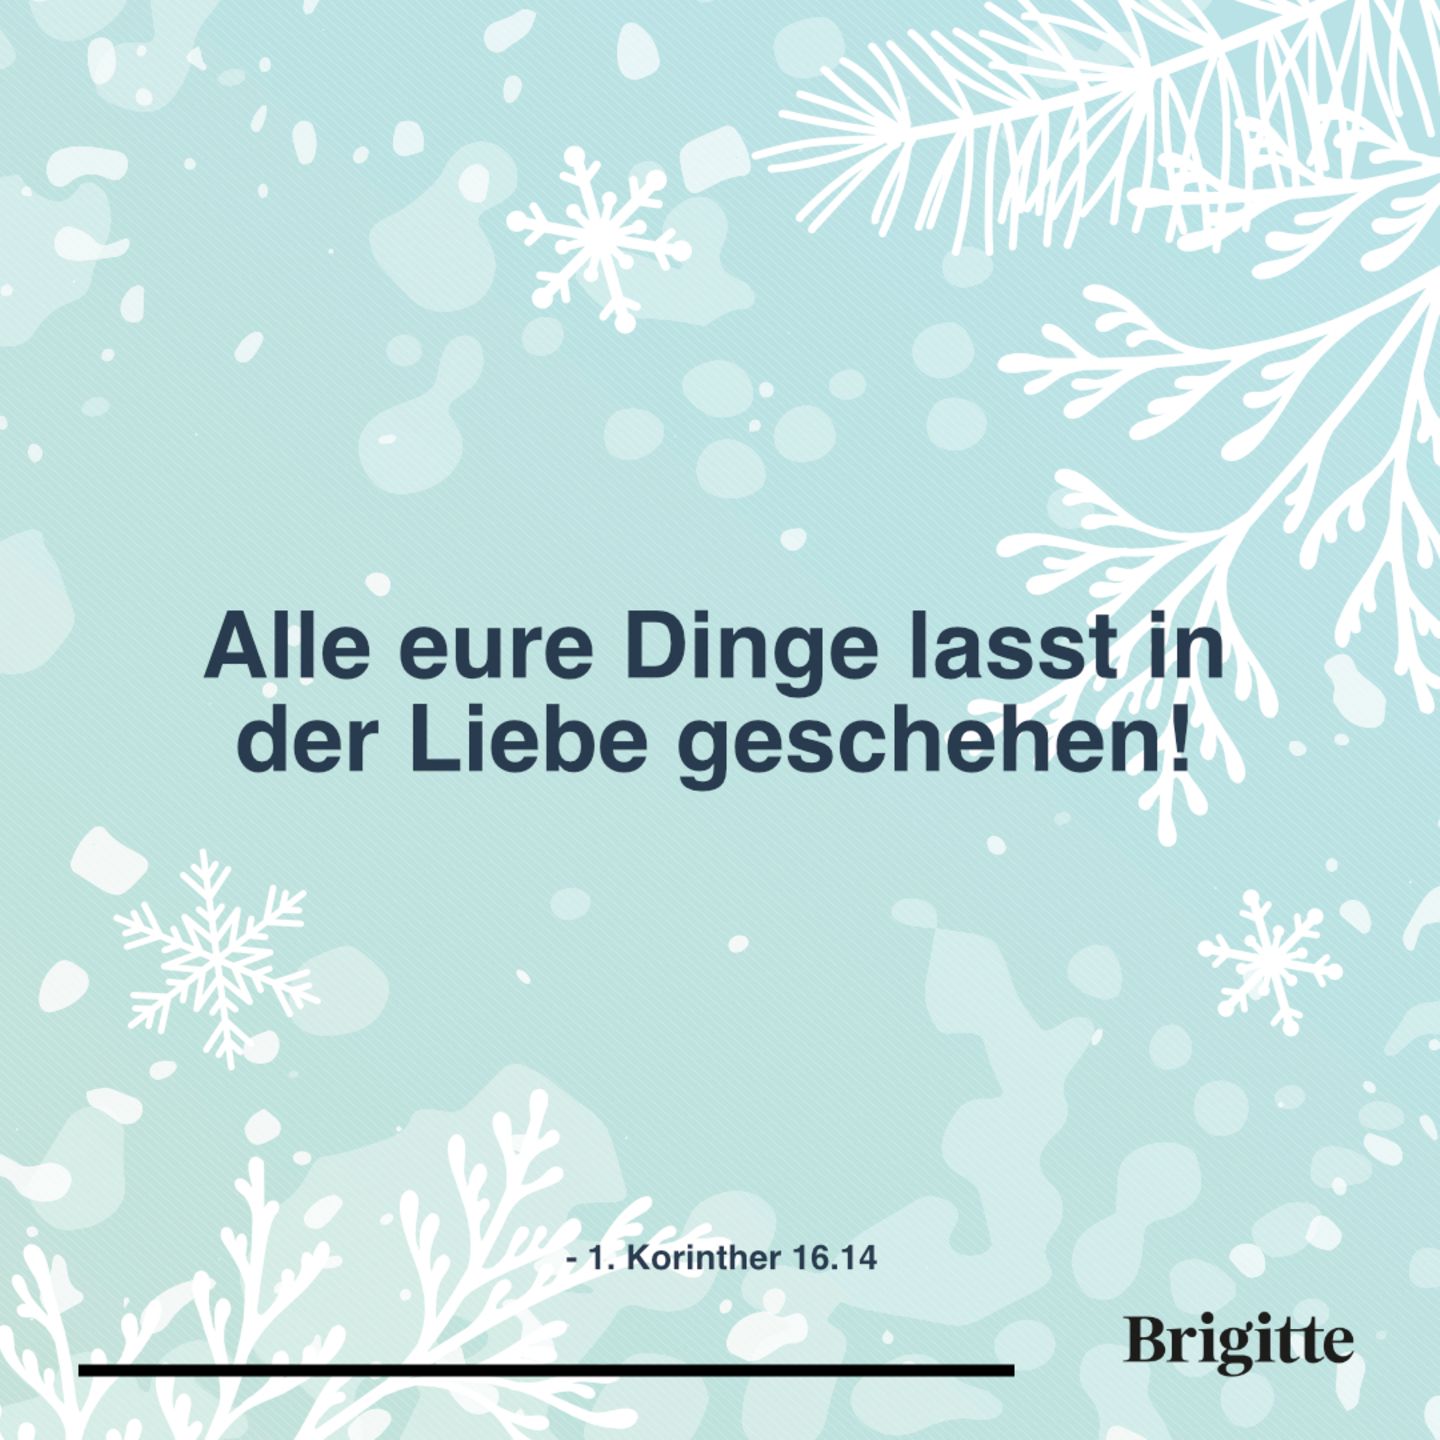 Schone Zitate Zu Weihnachten Brigitte De